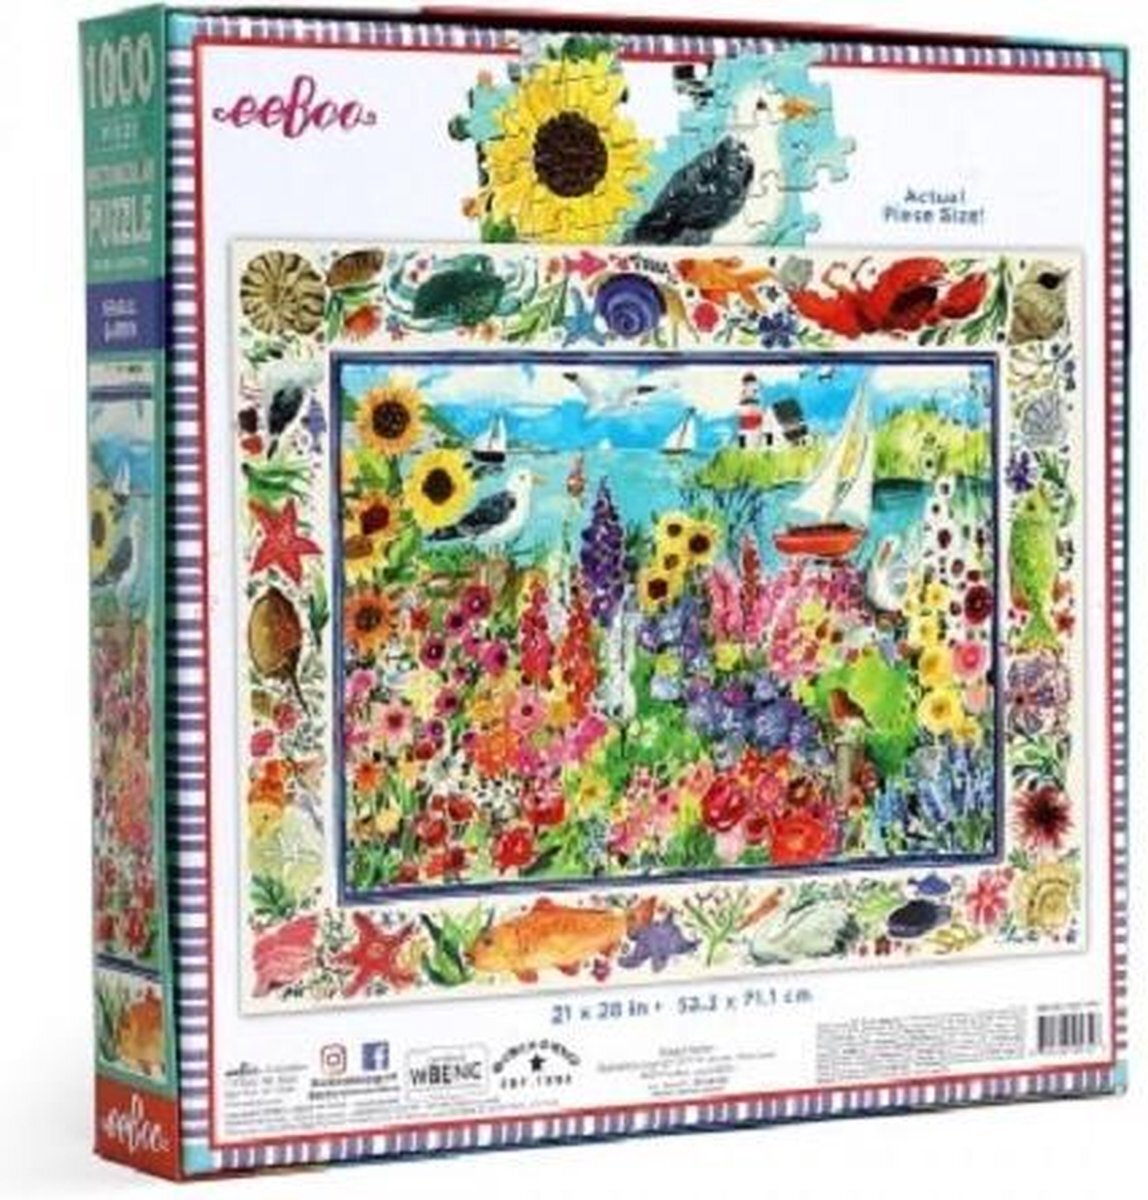 Eeboo Puzzel van karton met 1000 delen Seagull Garden